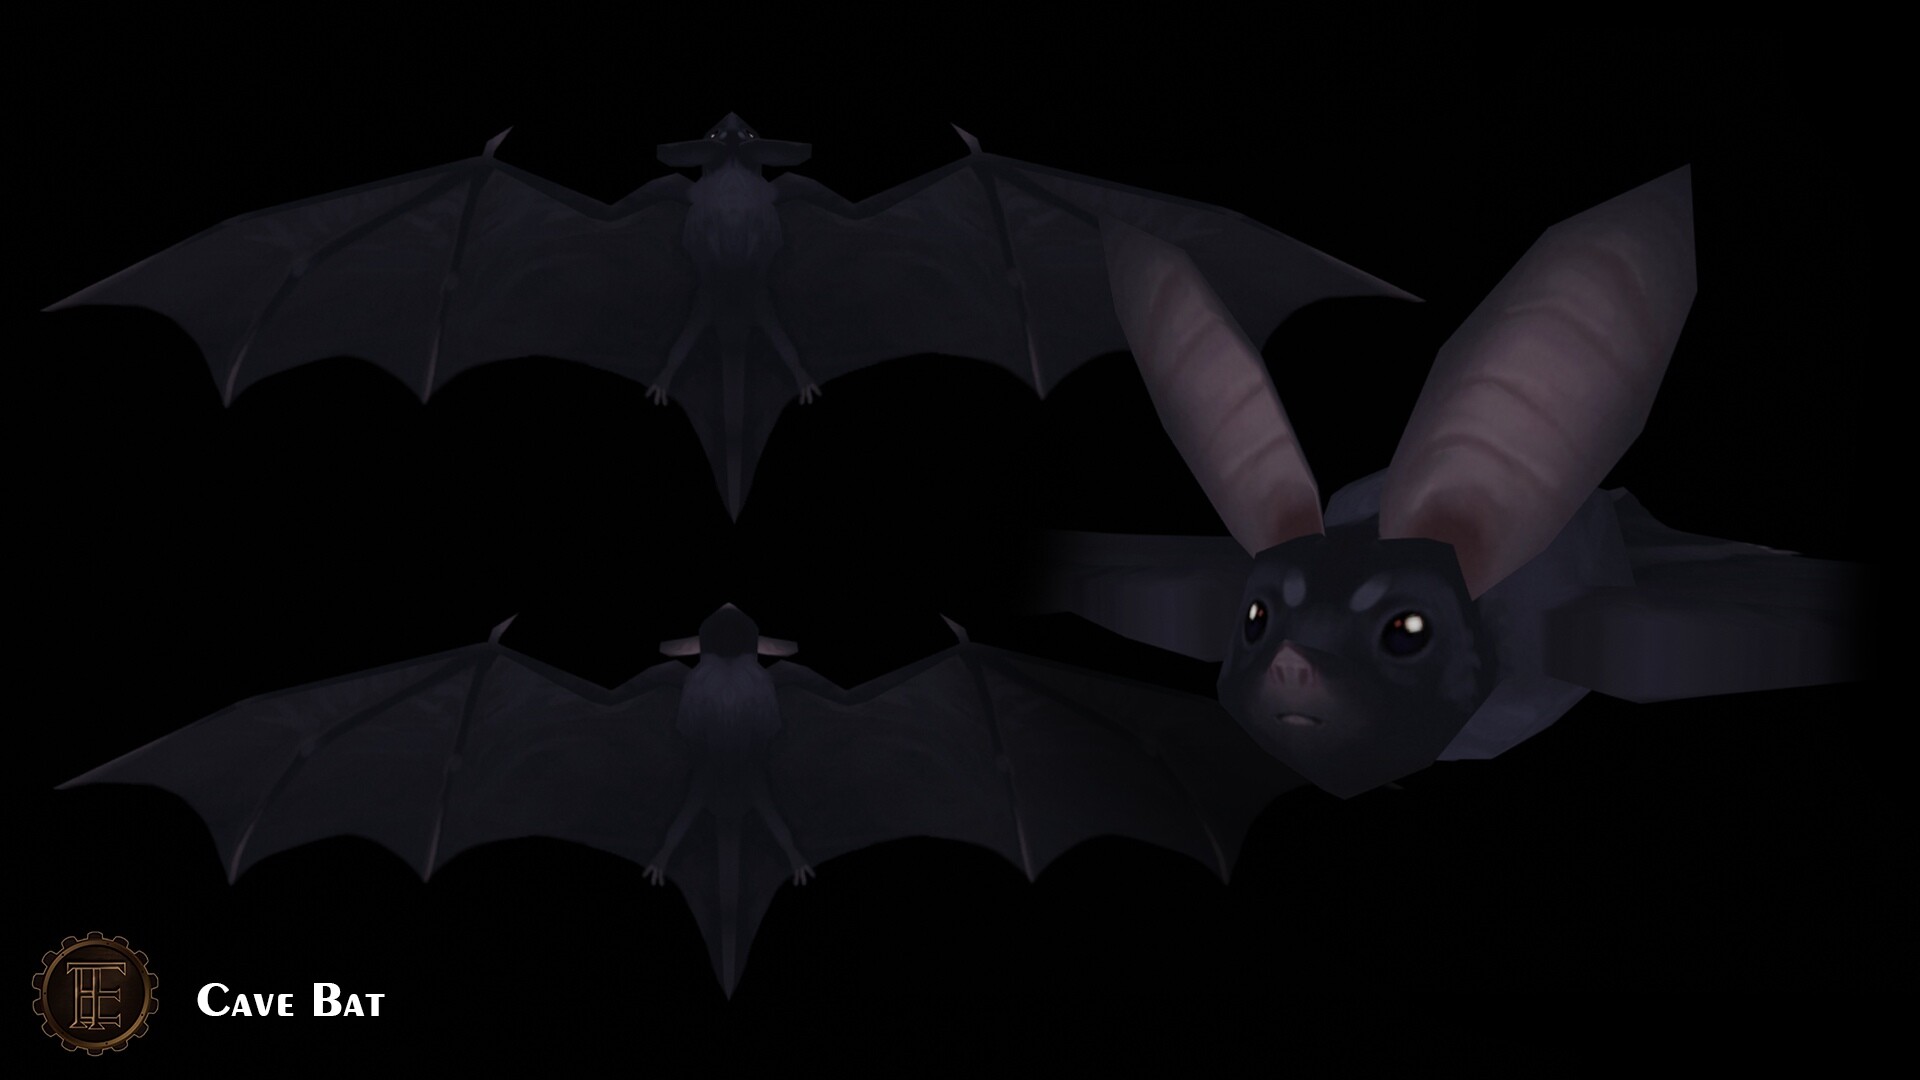 Cave Bat -- Eternal Time project.